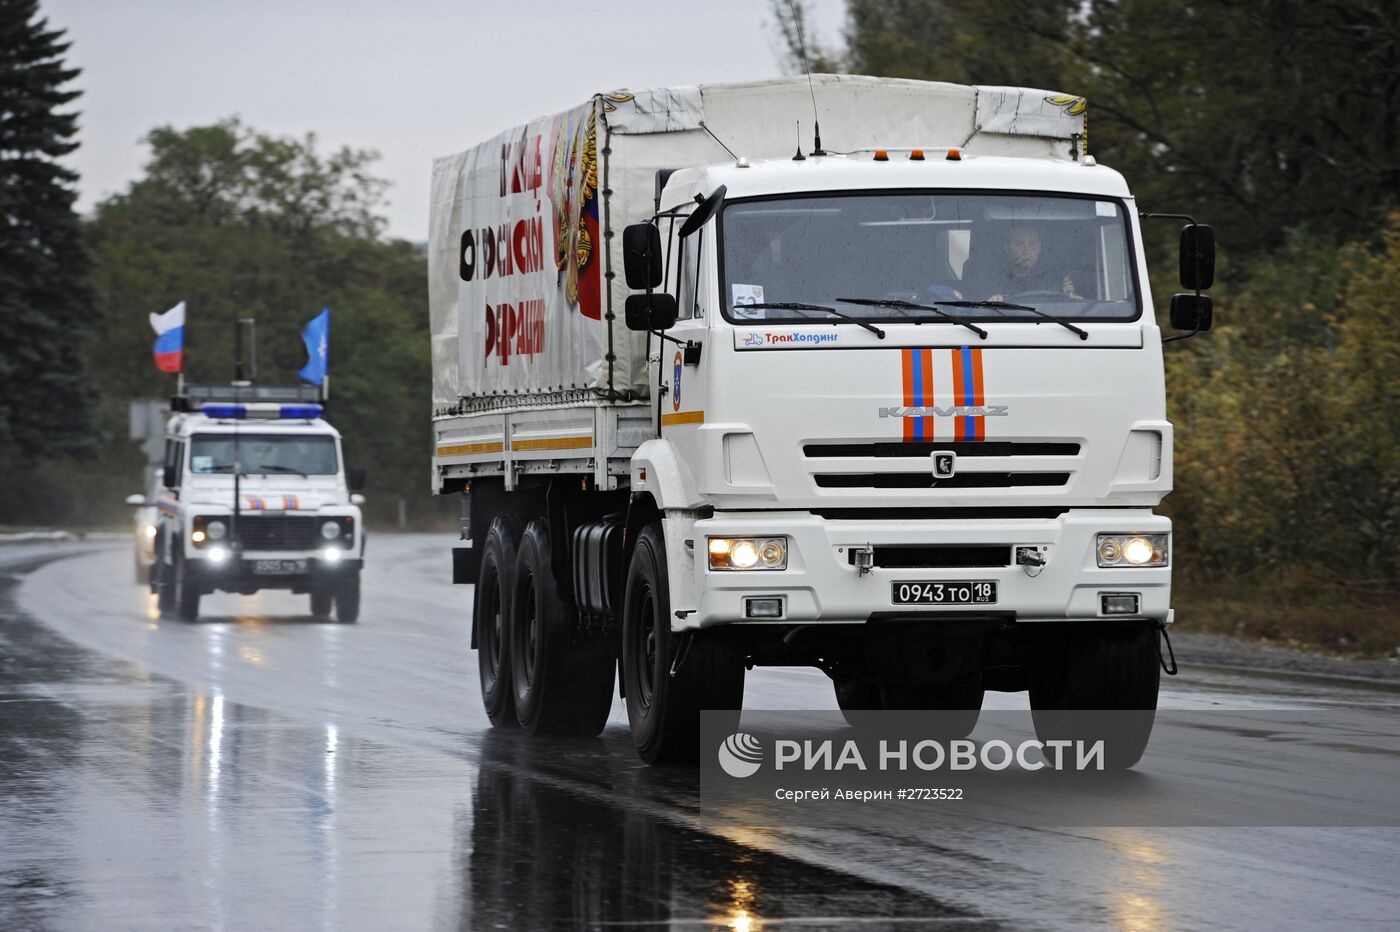 Колонны МЧС РФ доставили в Донецк и Луганск очередную партию гуманитарной помощи